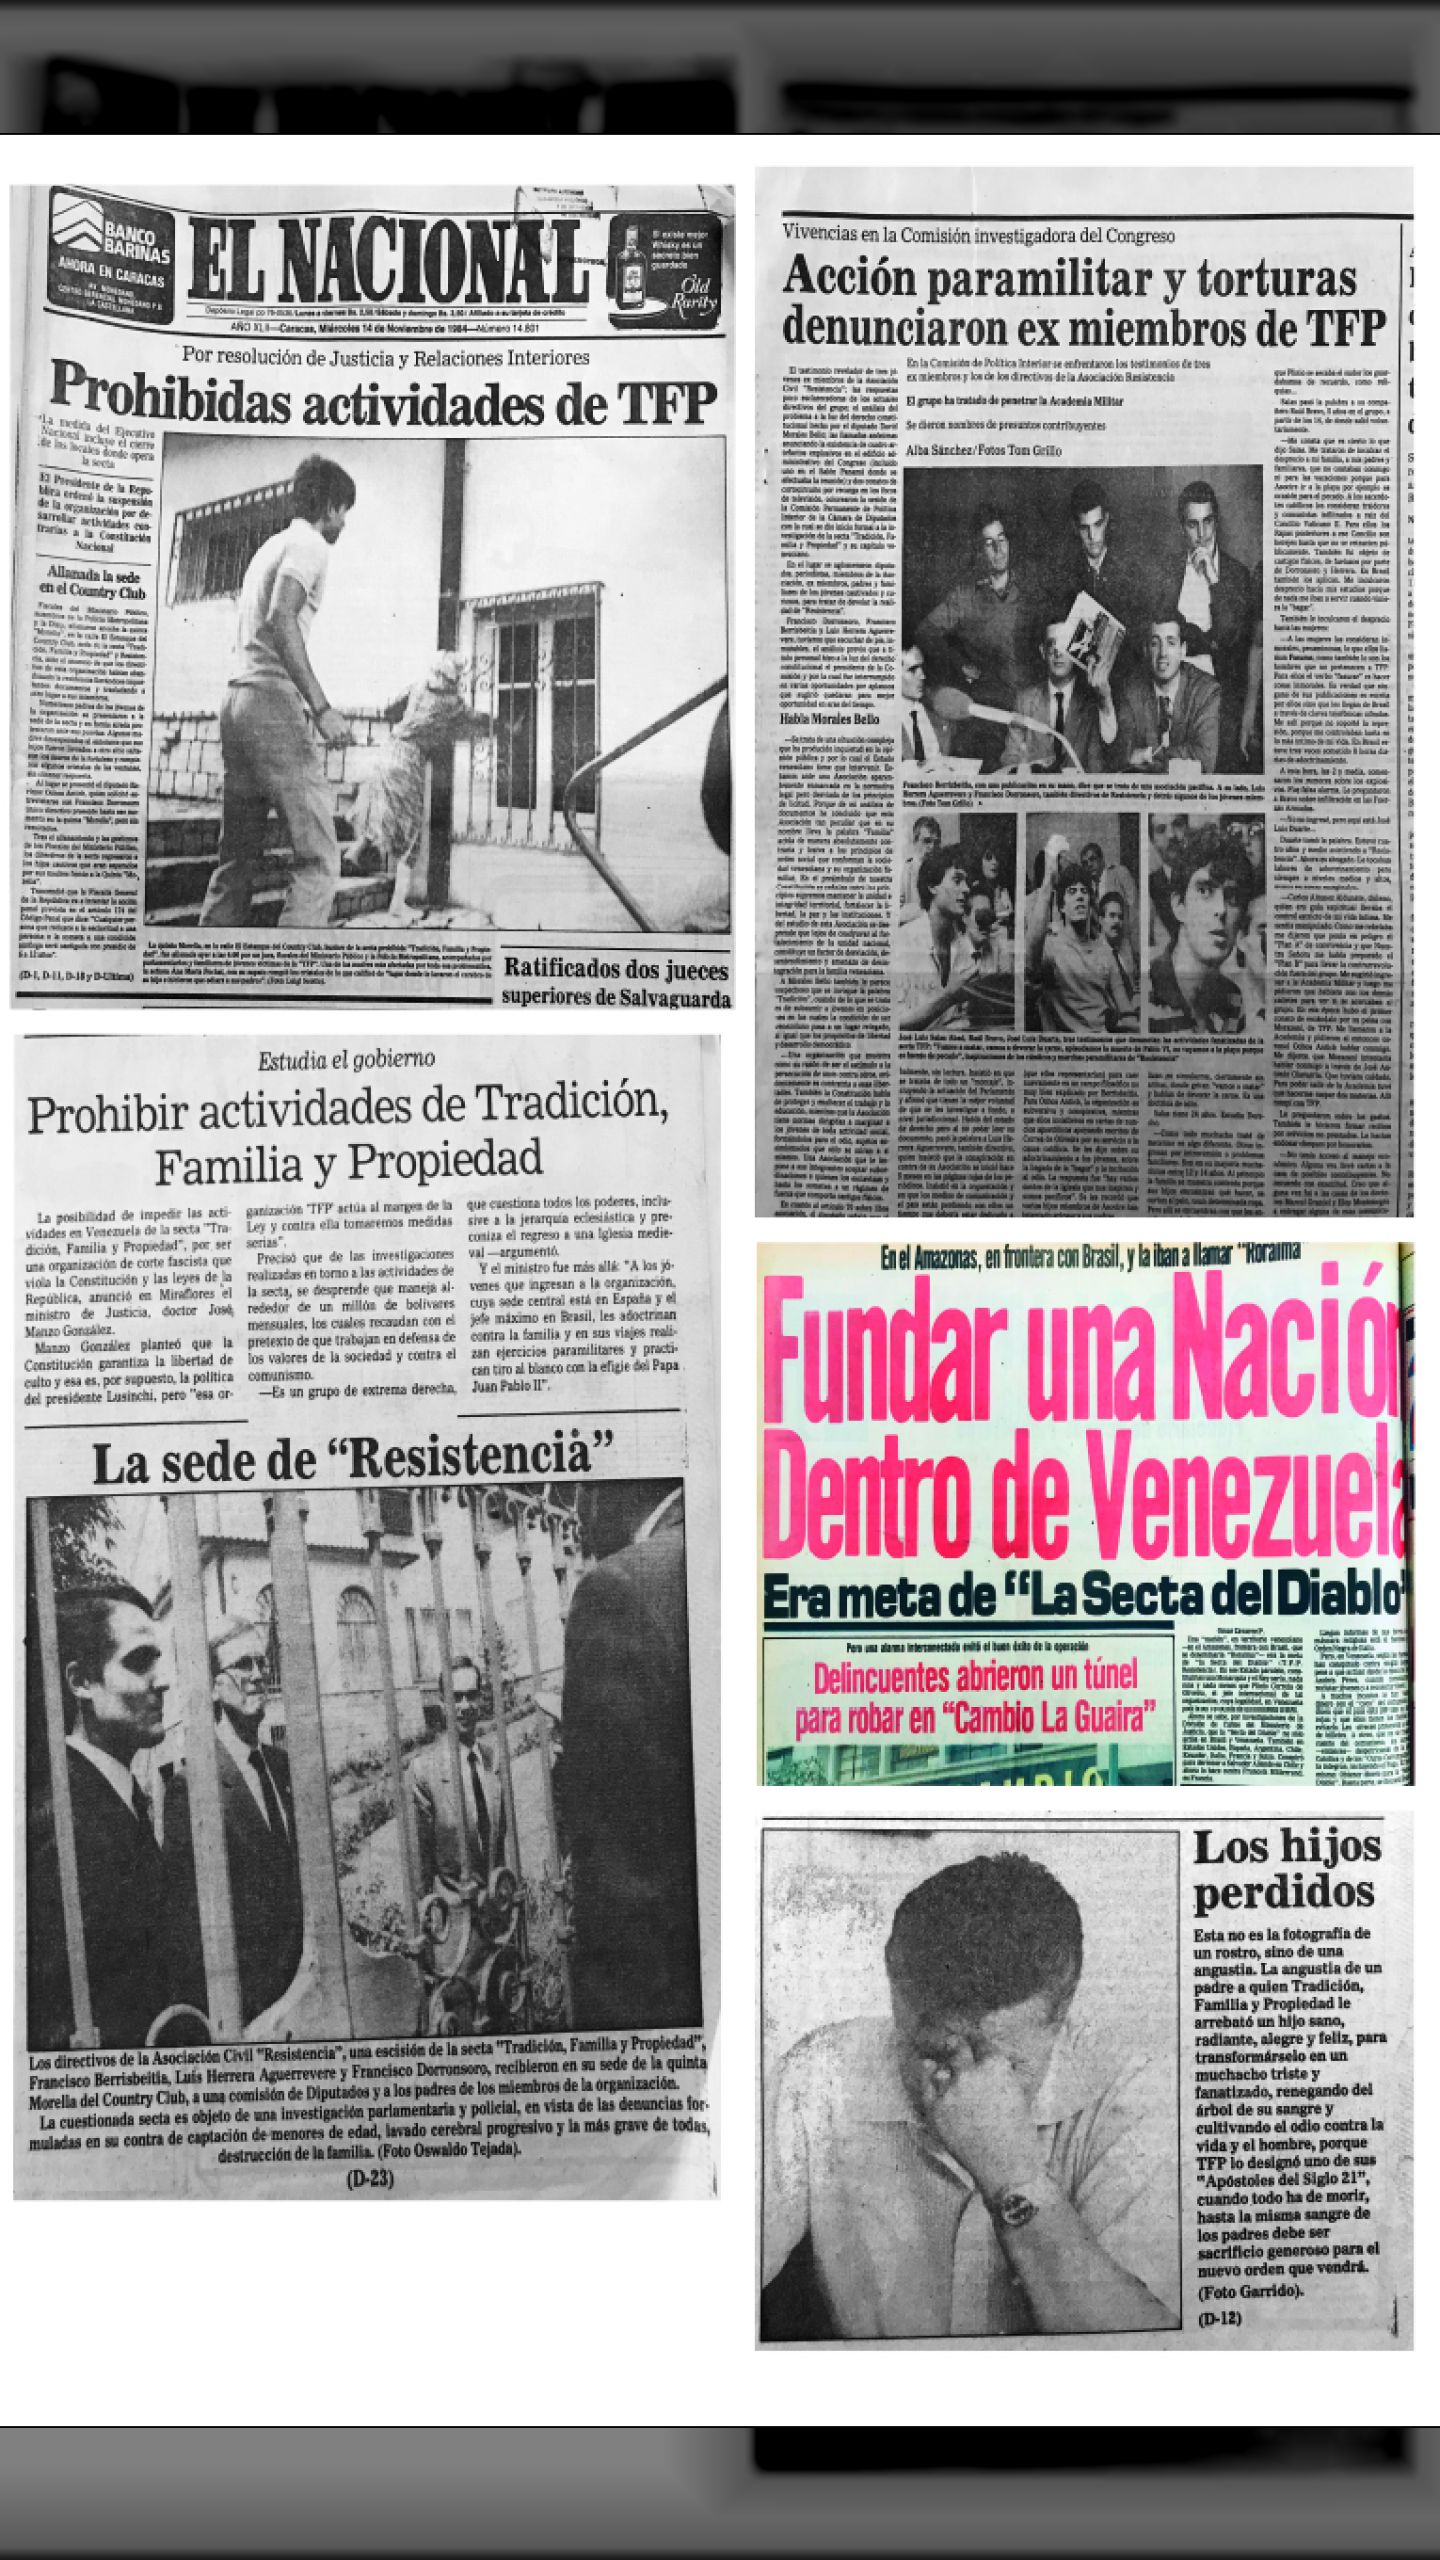 Prohibidas las actividades de TFP (Tradición, Familia y Propiedad) (El Nacional, 14 de noviembre de 1984)